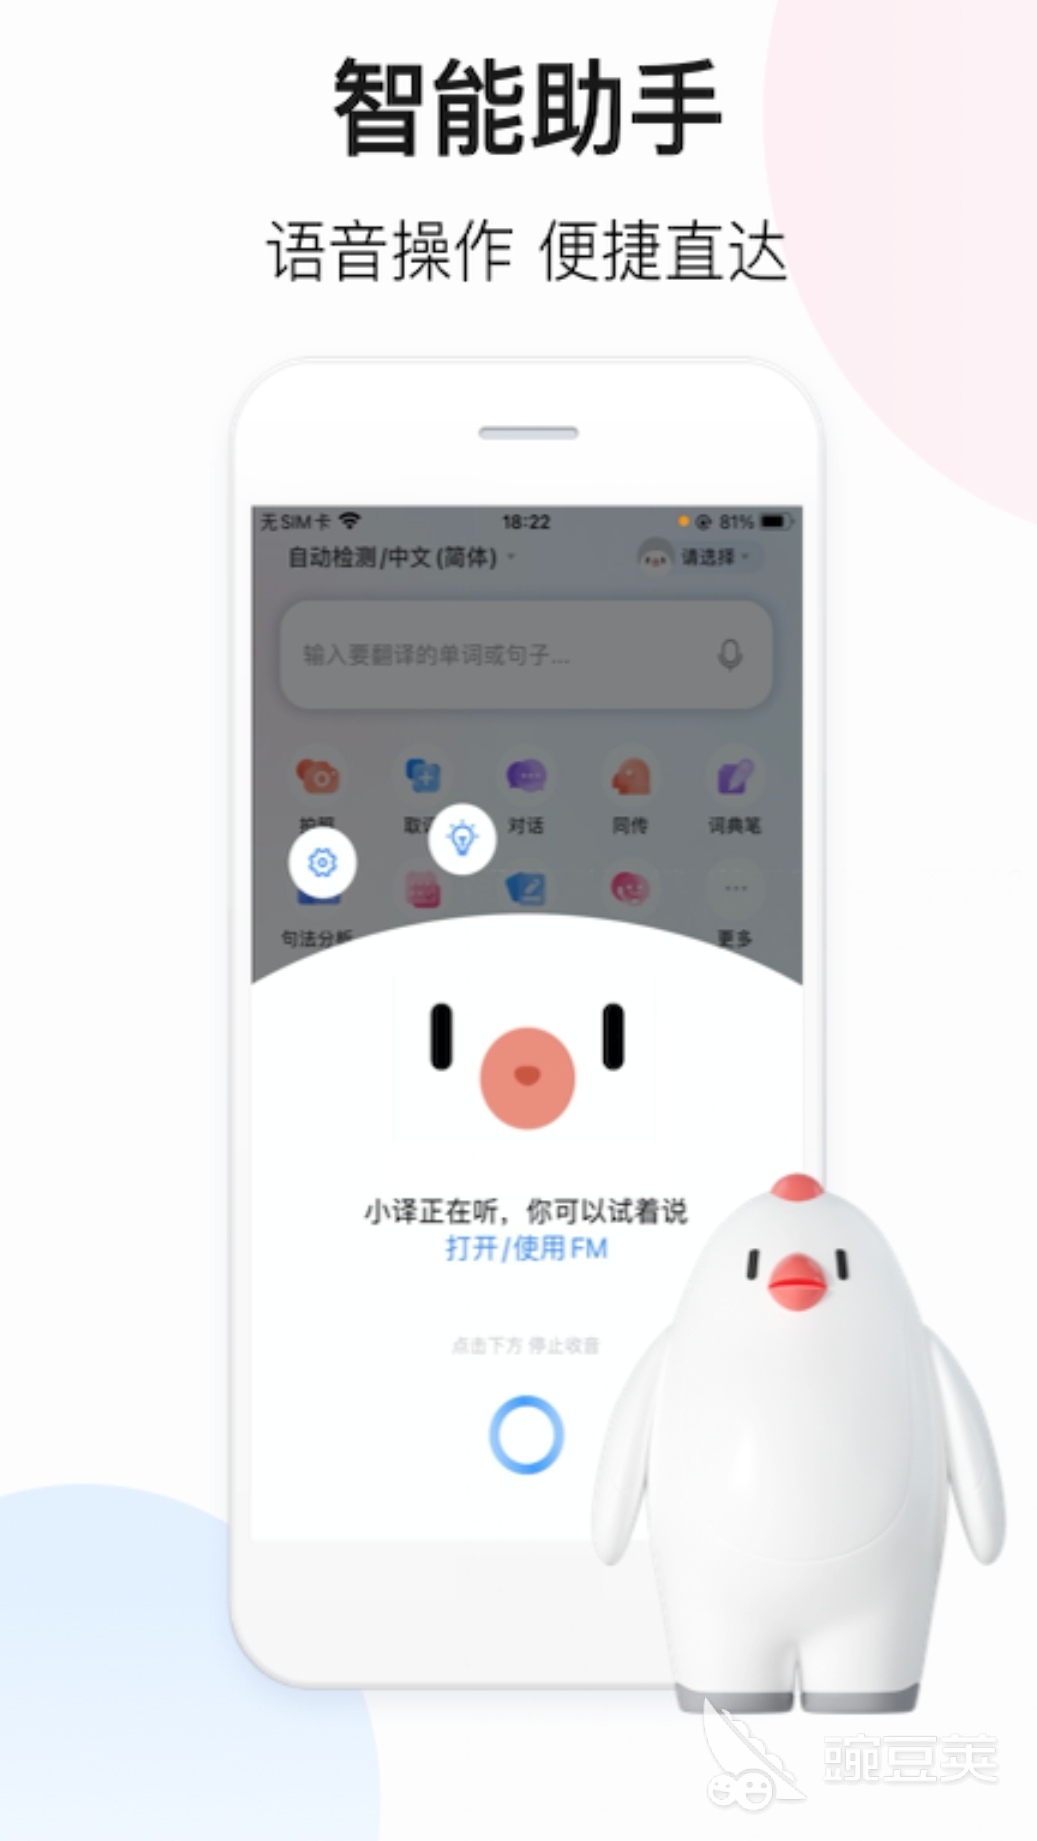 中文翻译成英文的软件app哪个好用2022 好用的翻译软件推荐